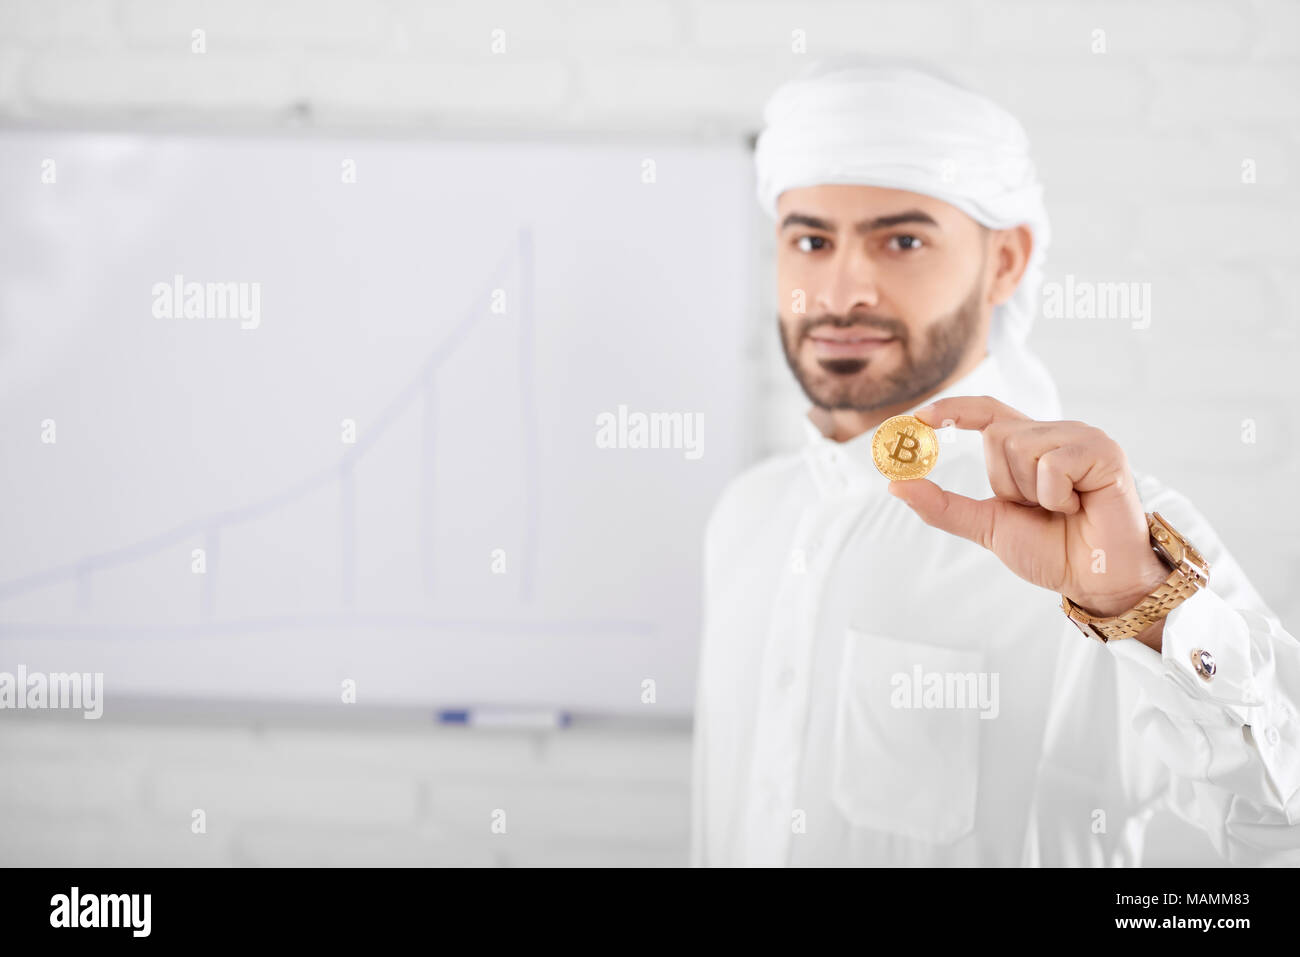 Wohlhabend aussehenden muslimischer männlicher Modell in traditionelle islamische Kleidung und Goldene bitcoin vor der Tafel an der Wand. Selektiver Fokus, unscharfen Hintergrund, horizontal gedreht. Konzept der cryptocurrency. Stockfoto